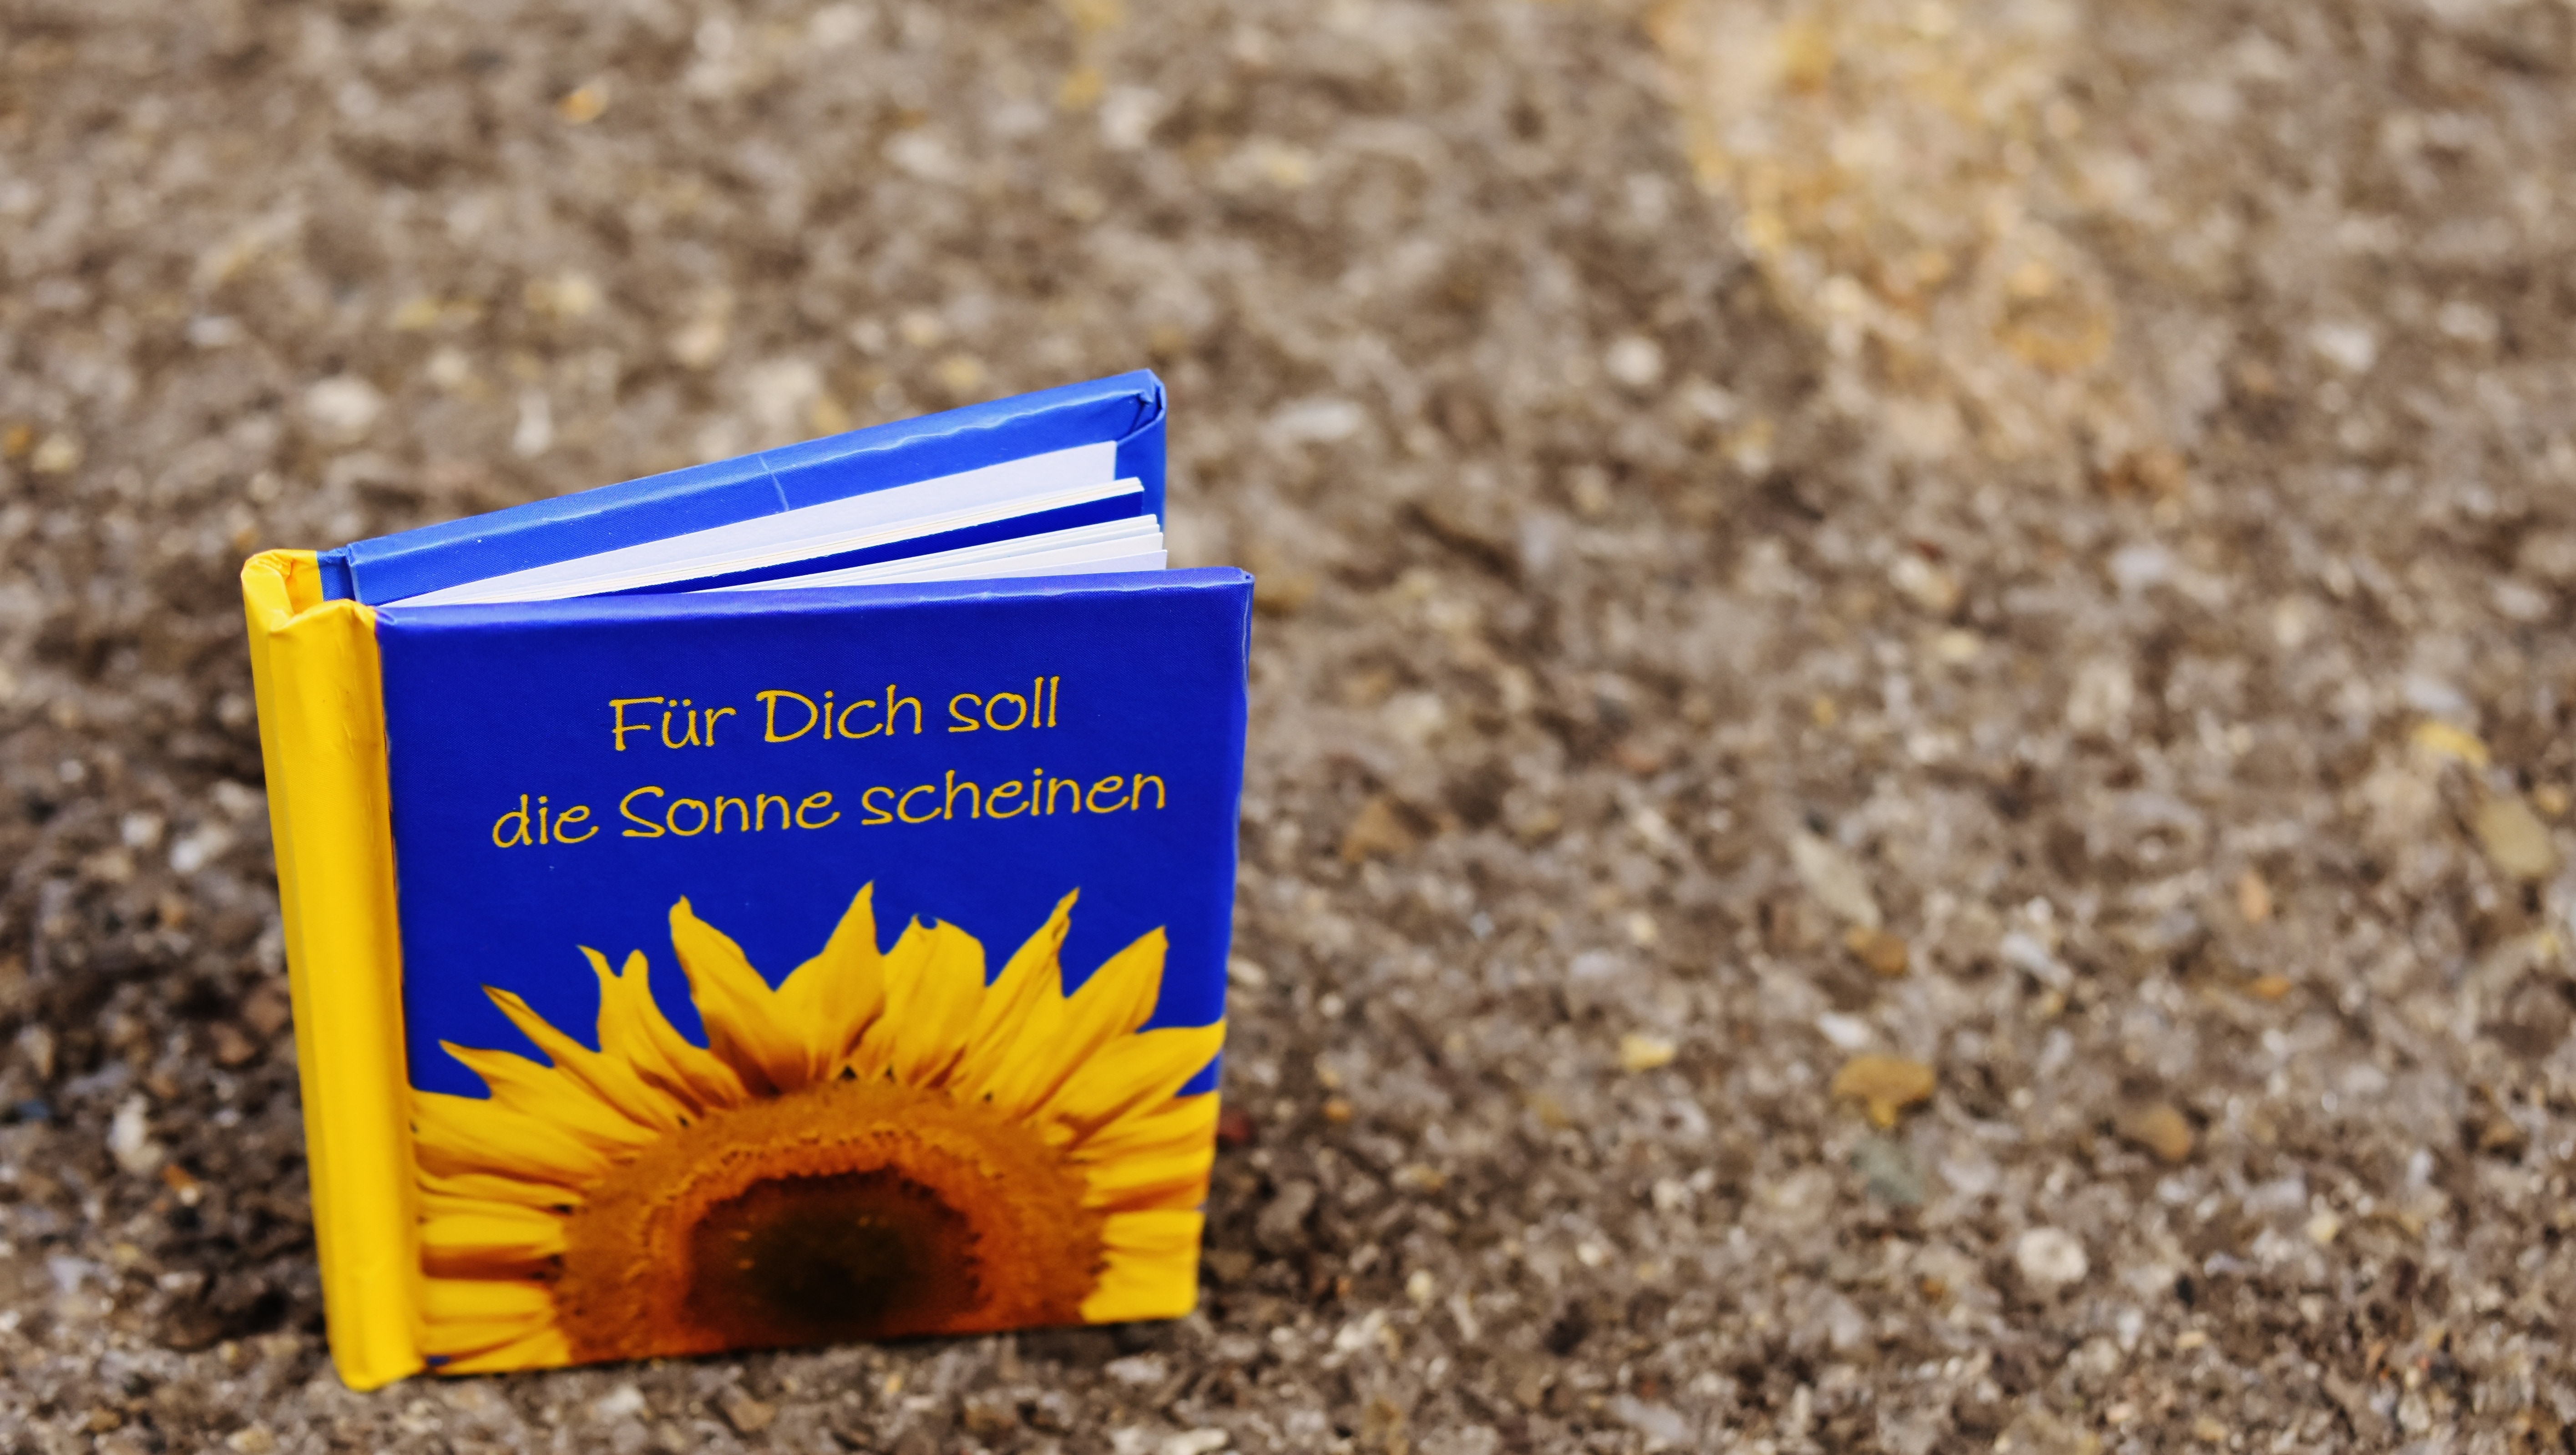 Fur Dich Soll die Sonne Scheinen book on floor